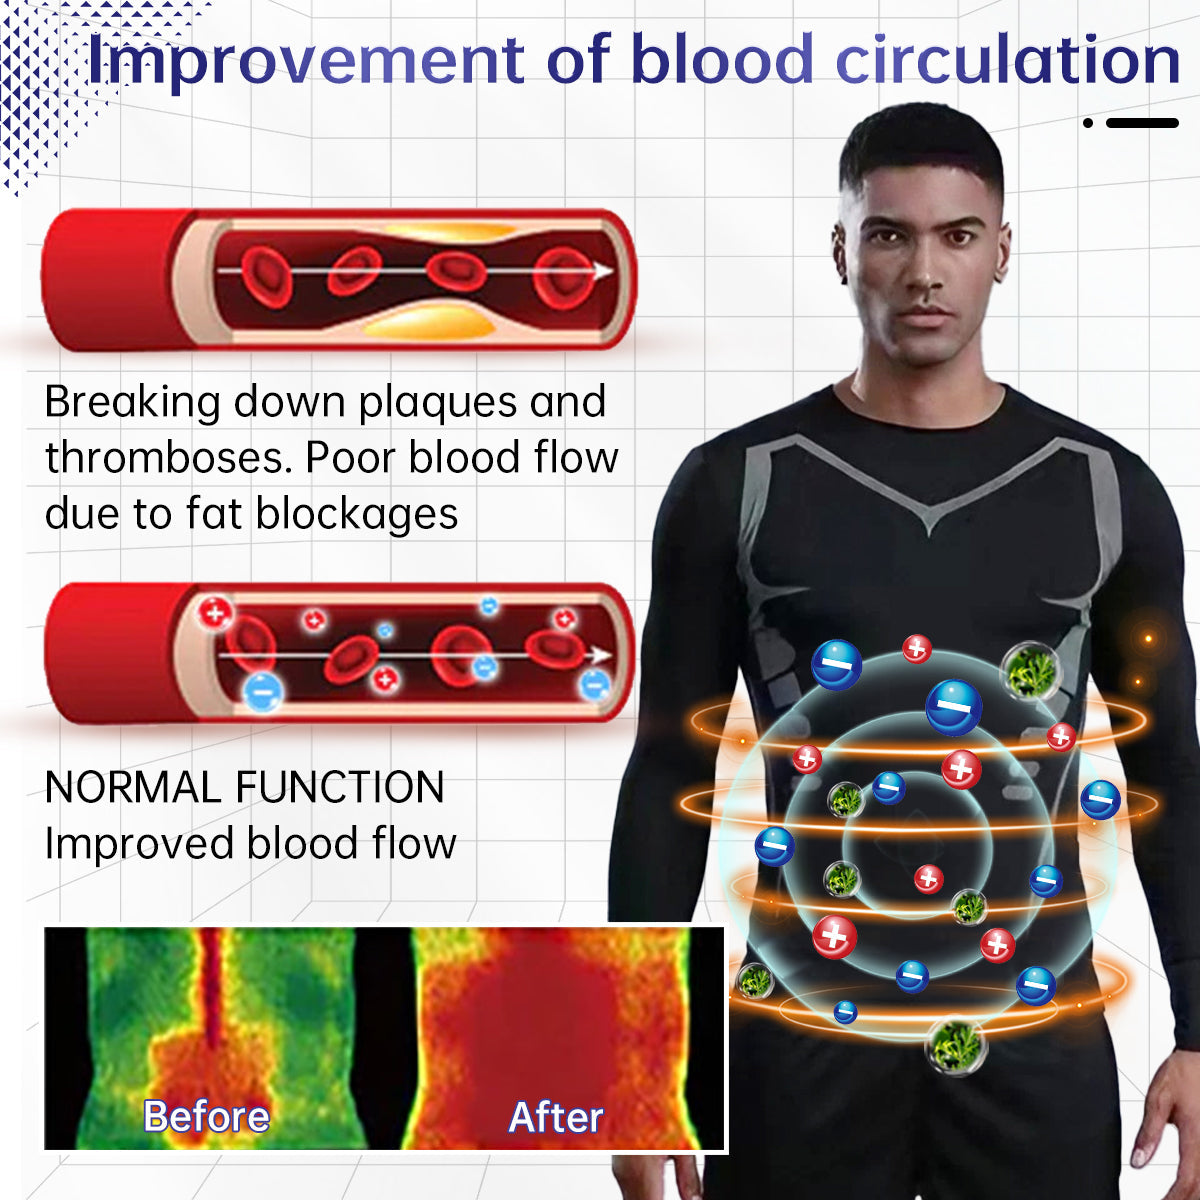 Lenjerie de corp magnetică cu turmalină în infraroșu Sugoola™ pentru bărbați